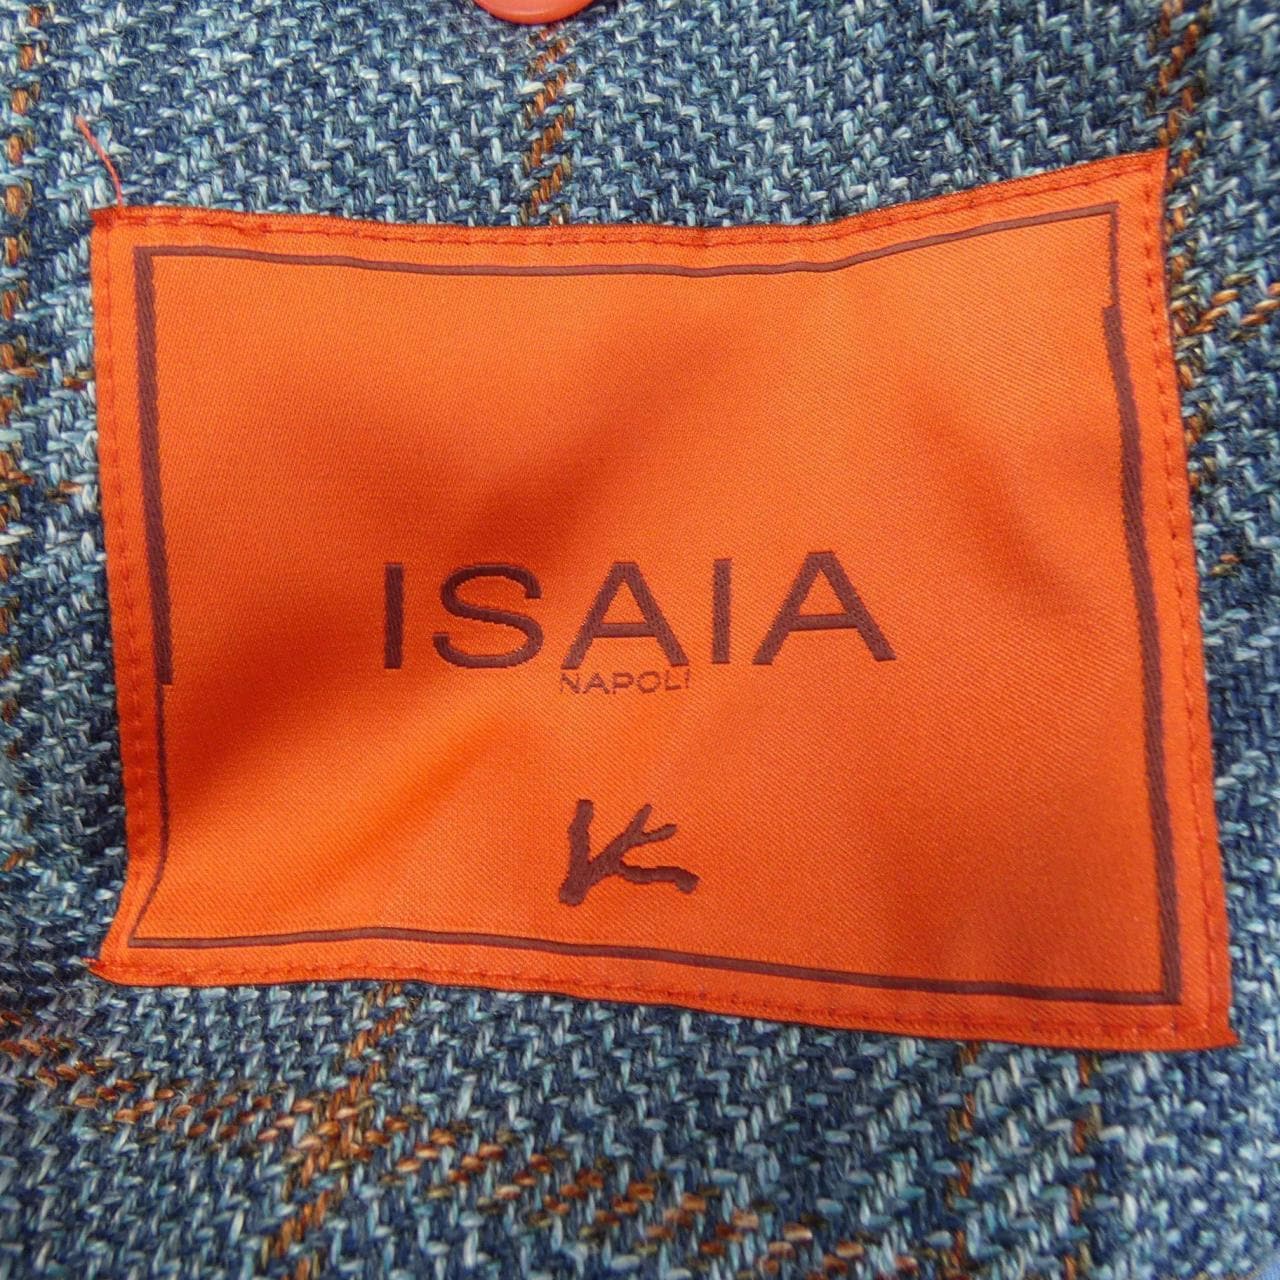 Isaiah ISAIA jacket